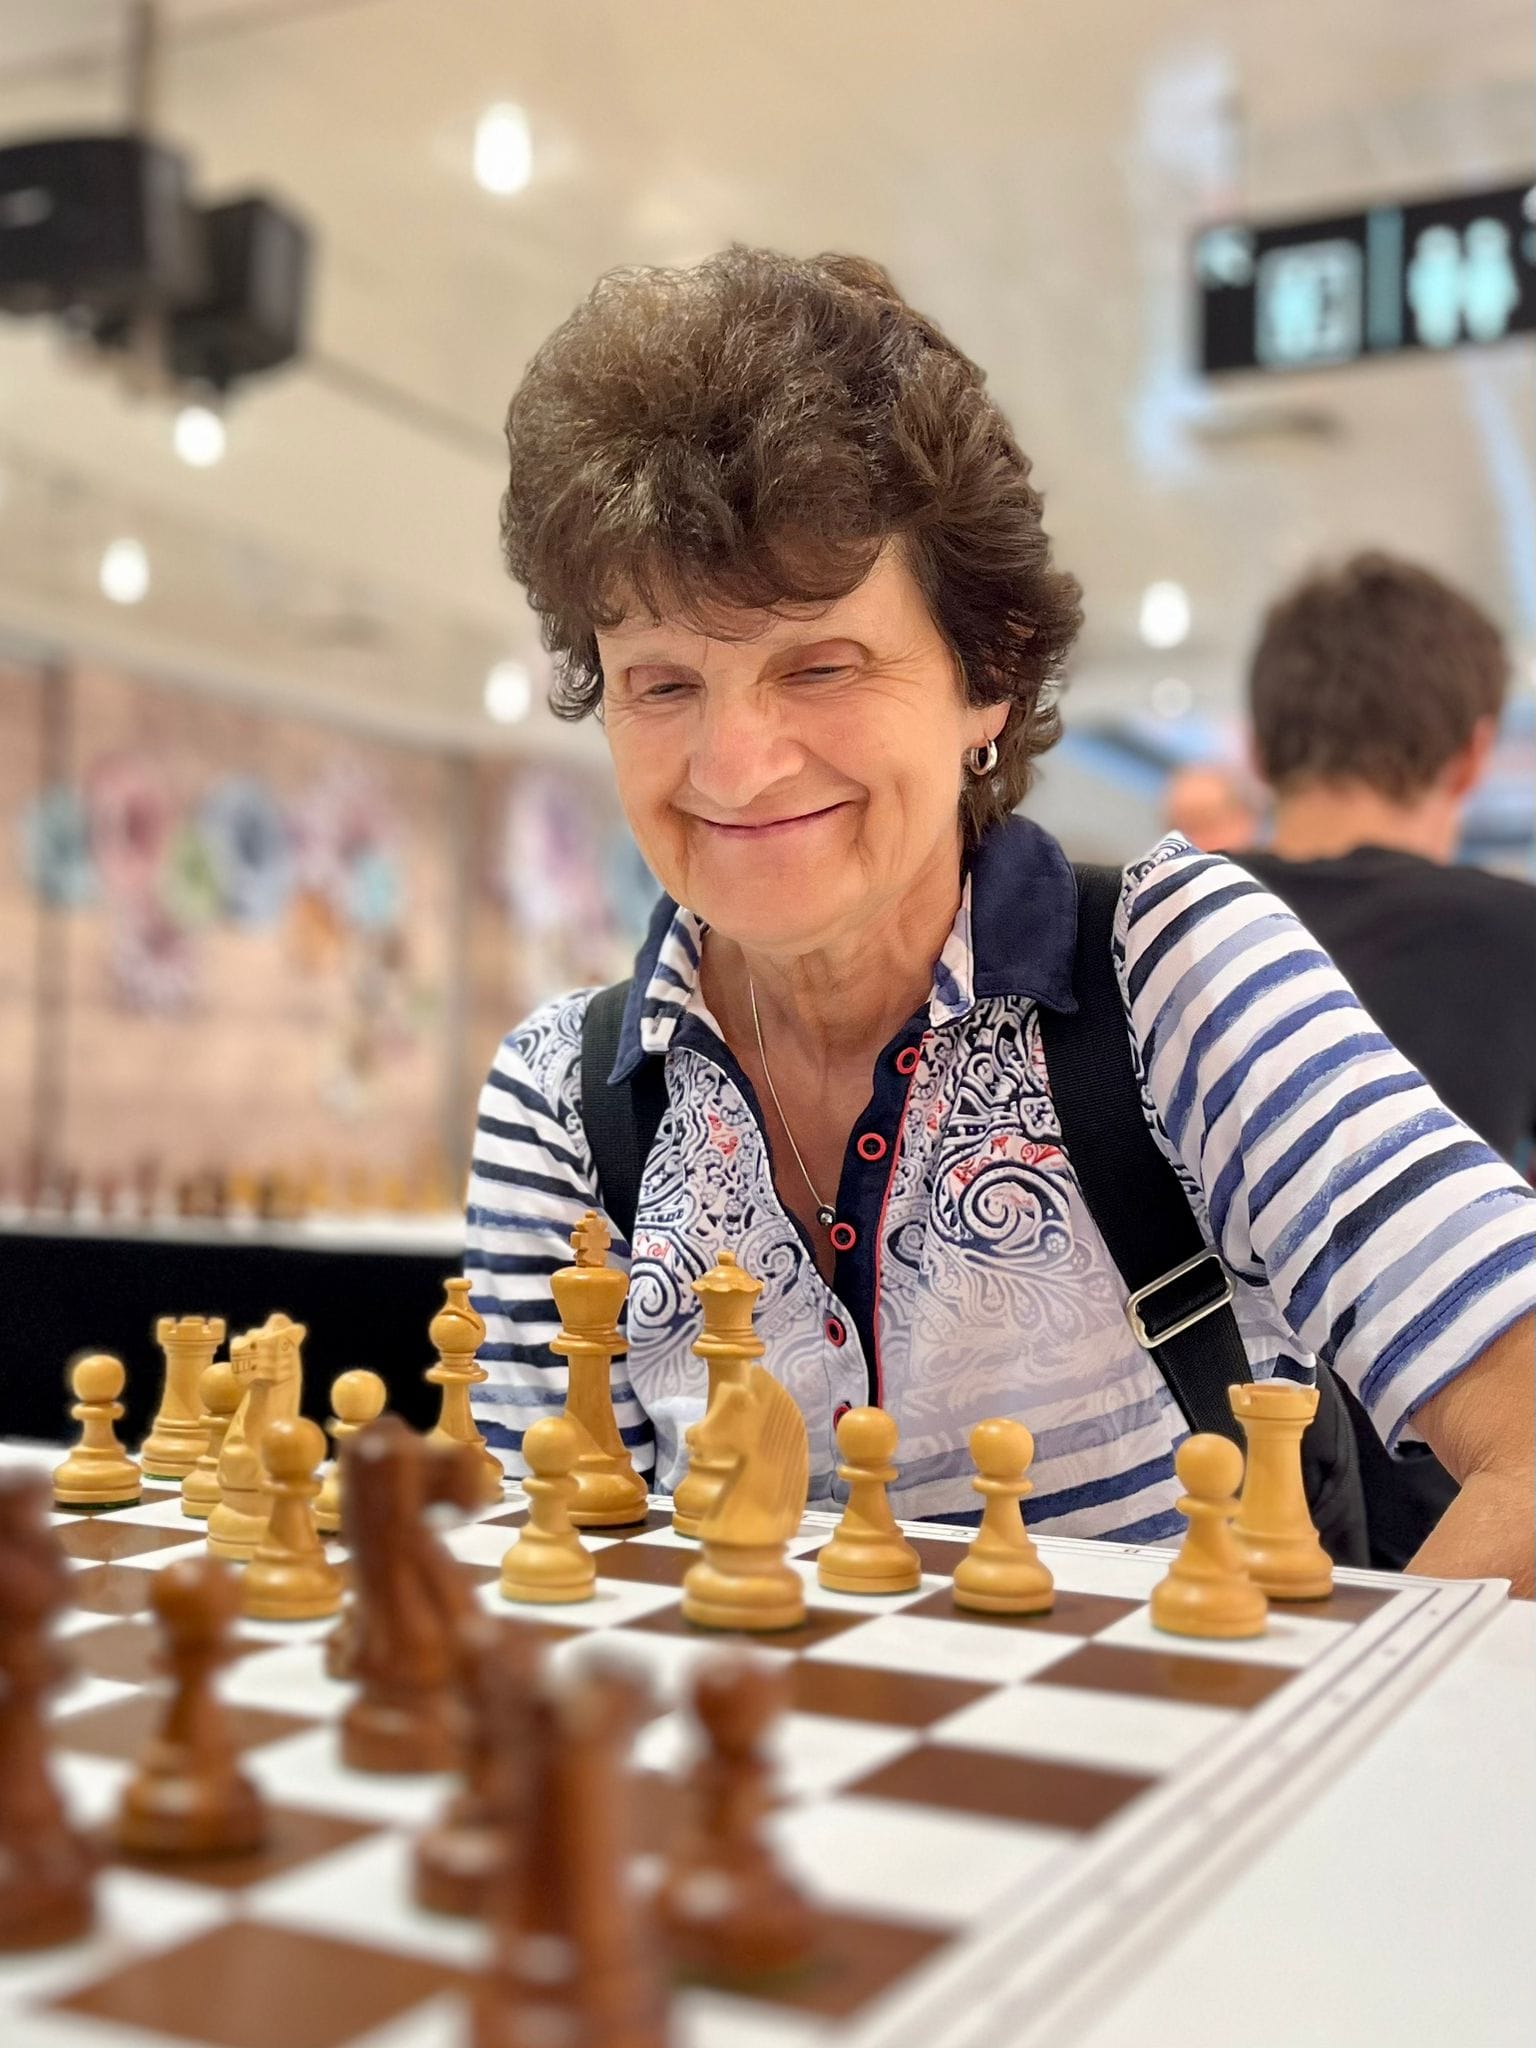 Faszination Schach im Aquis Plaza in Aachen ChessBase